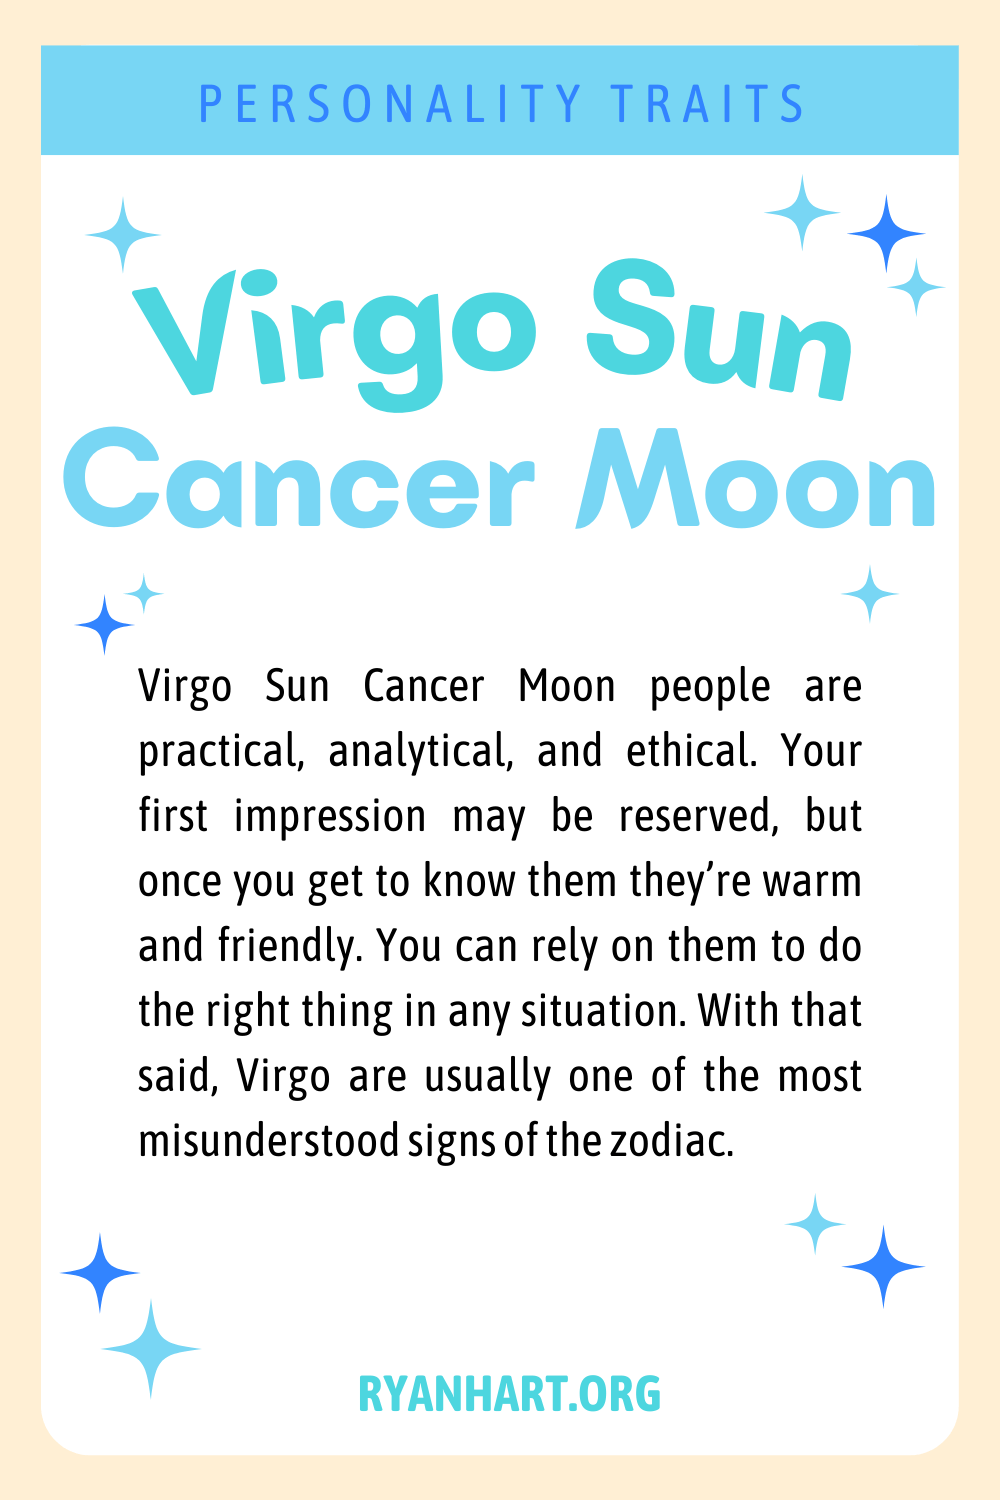 Virgo Sun Cancer Moon Description